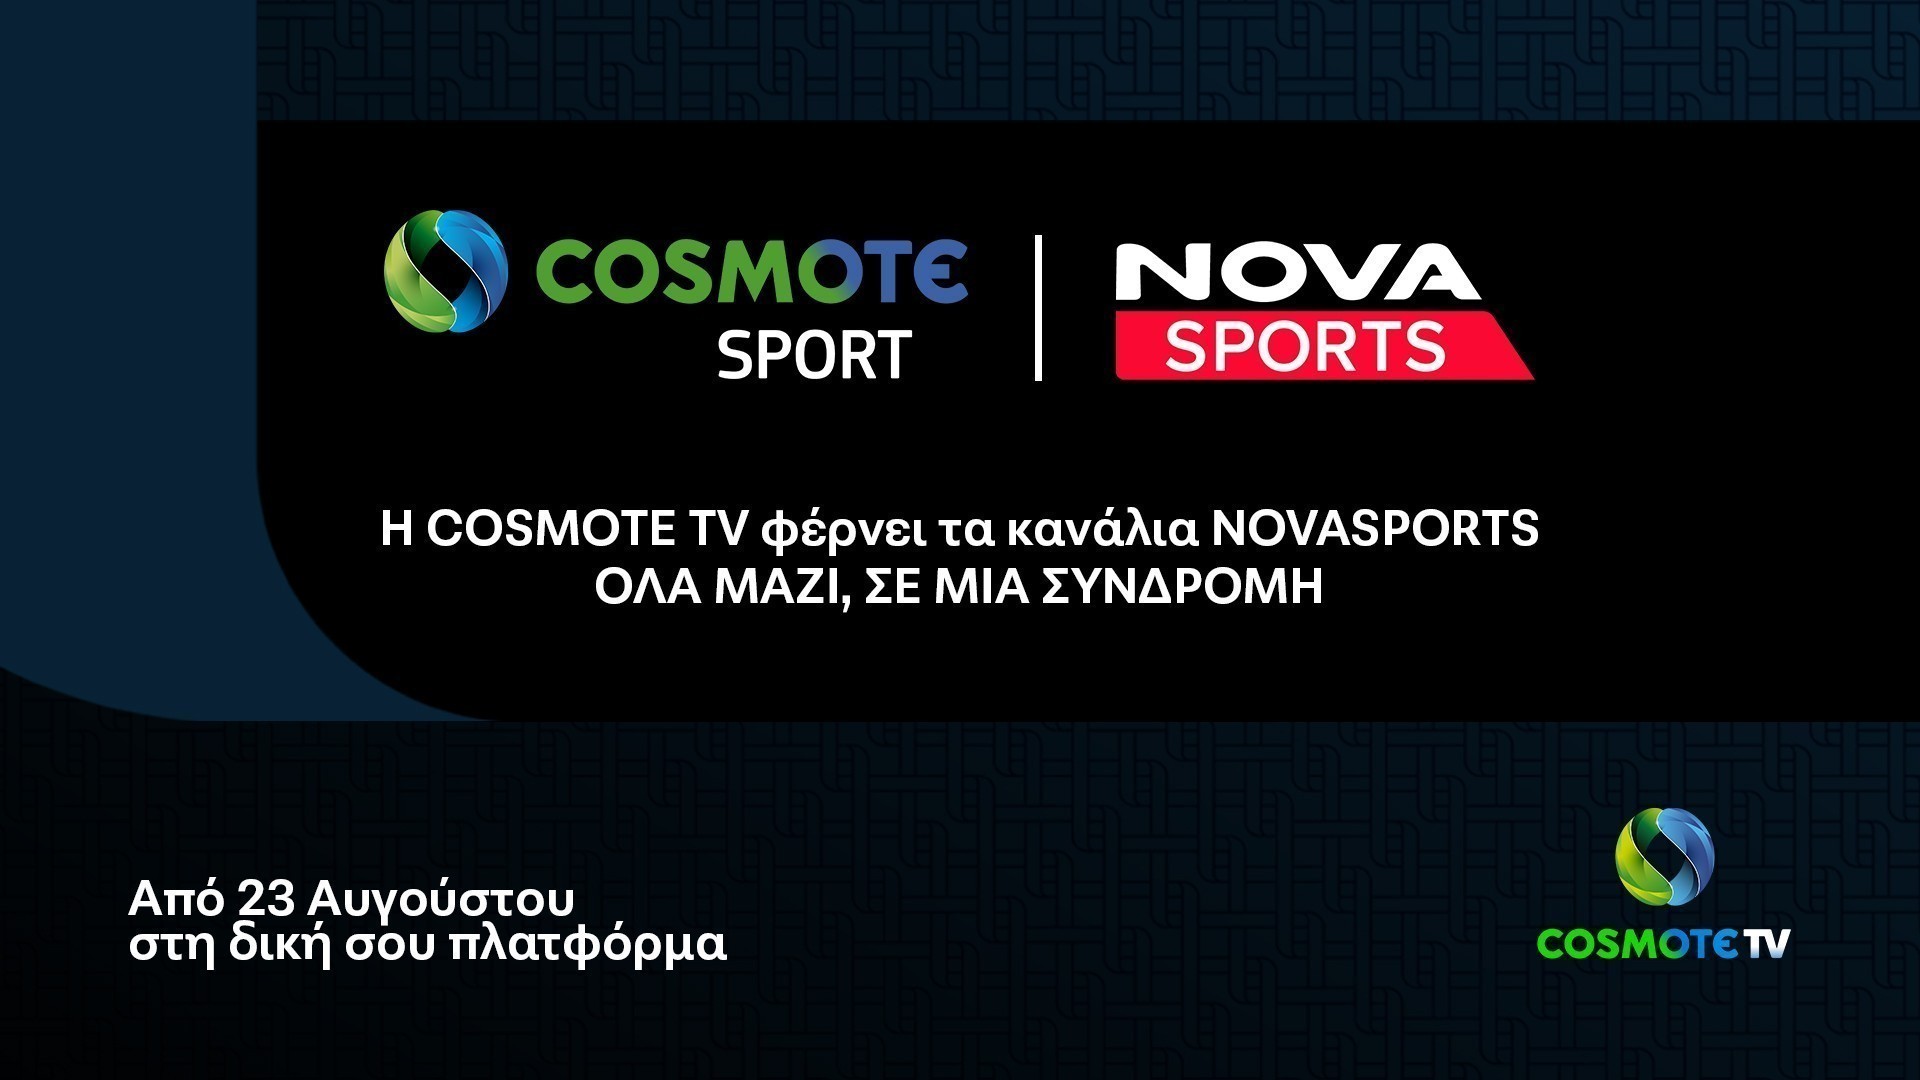 Εκλεισε η συμφωνία: Στην πλατφόρμα της COSMOTE TV τα κανάλια Novasports από τη νέα τηλεοπτική σεζόν